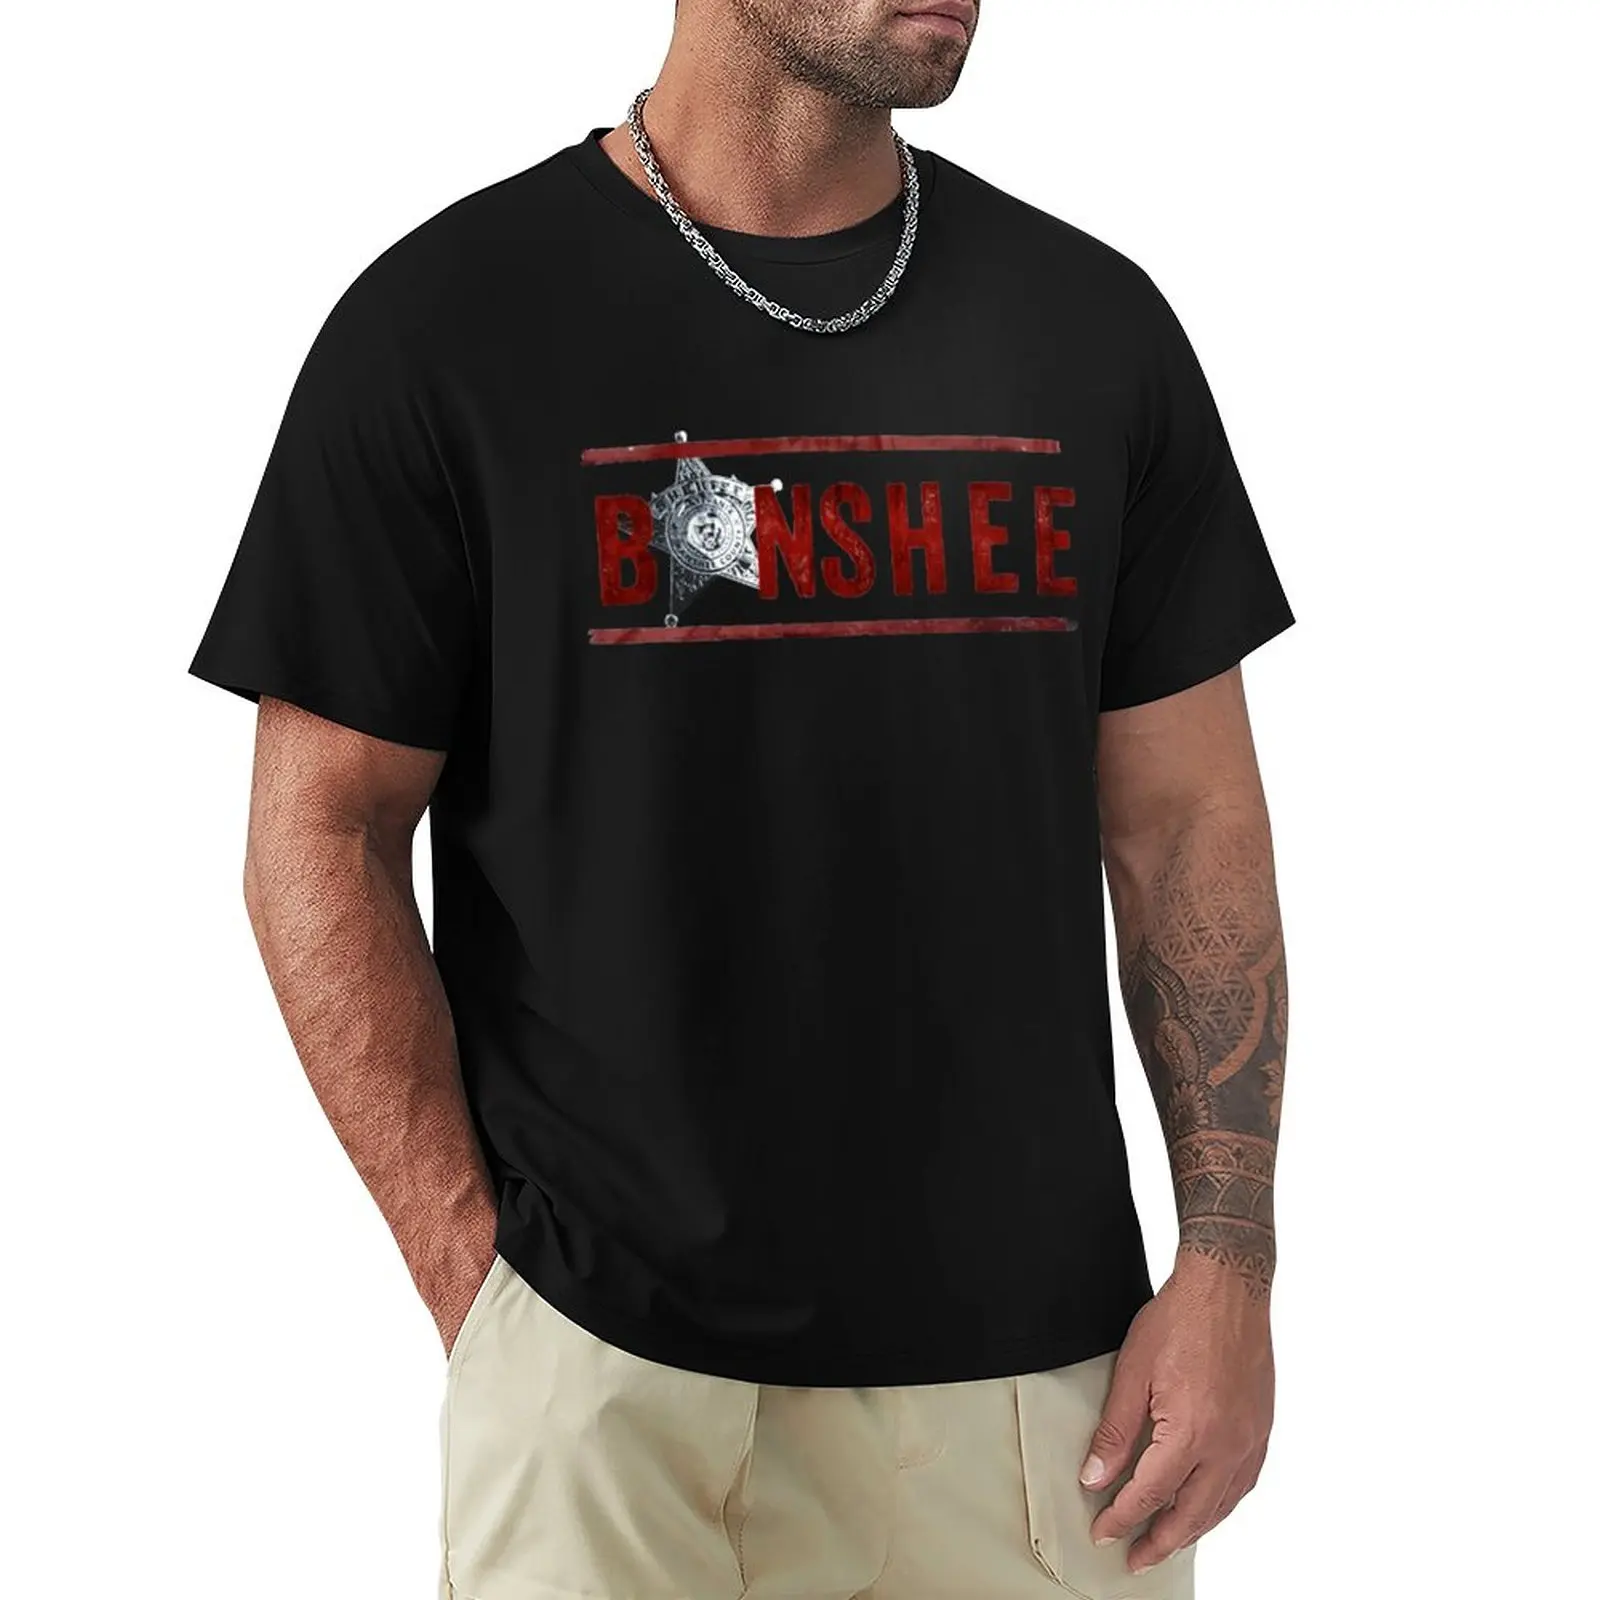 Banshee Американский боевик, драматический сериал, футболки, футболки с графическим рисунком, топы, одежда kawaii, мужские футболки с графическим рисунком